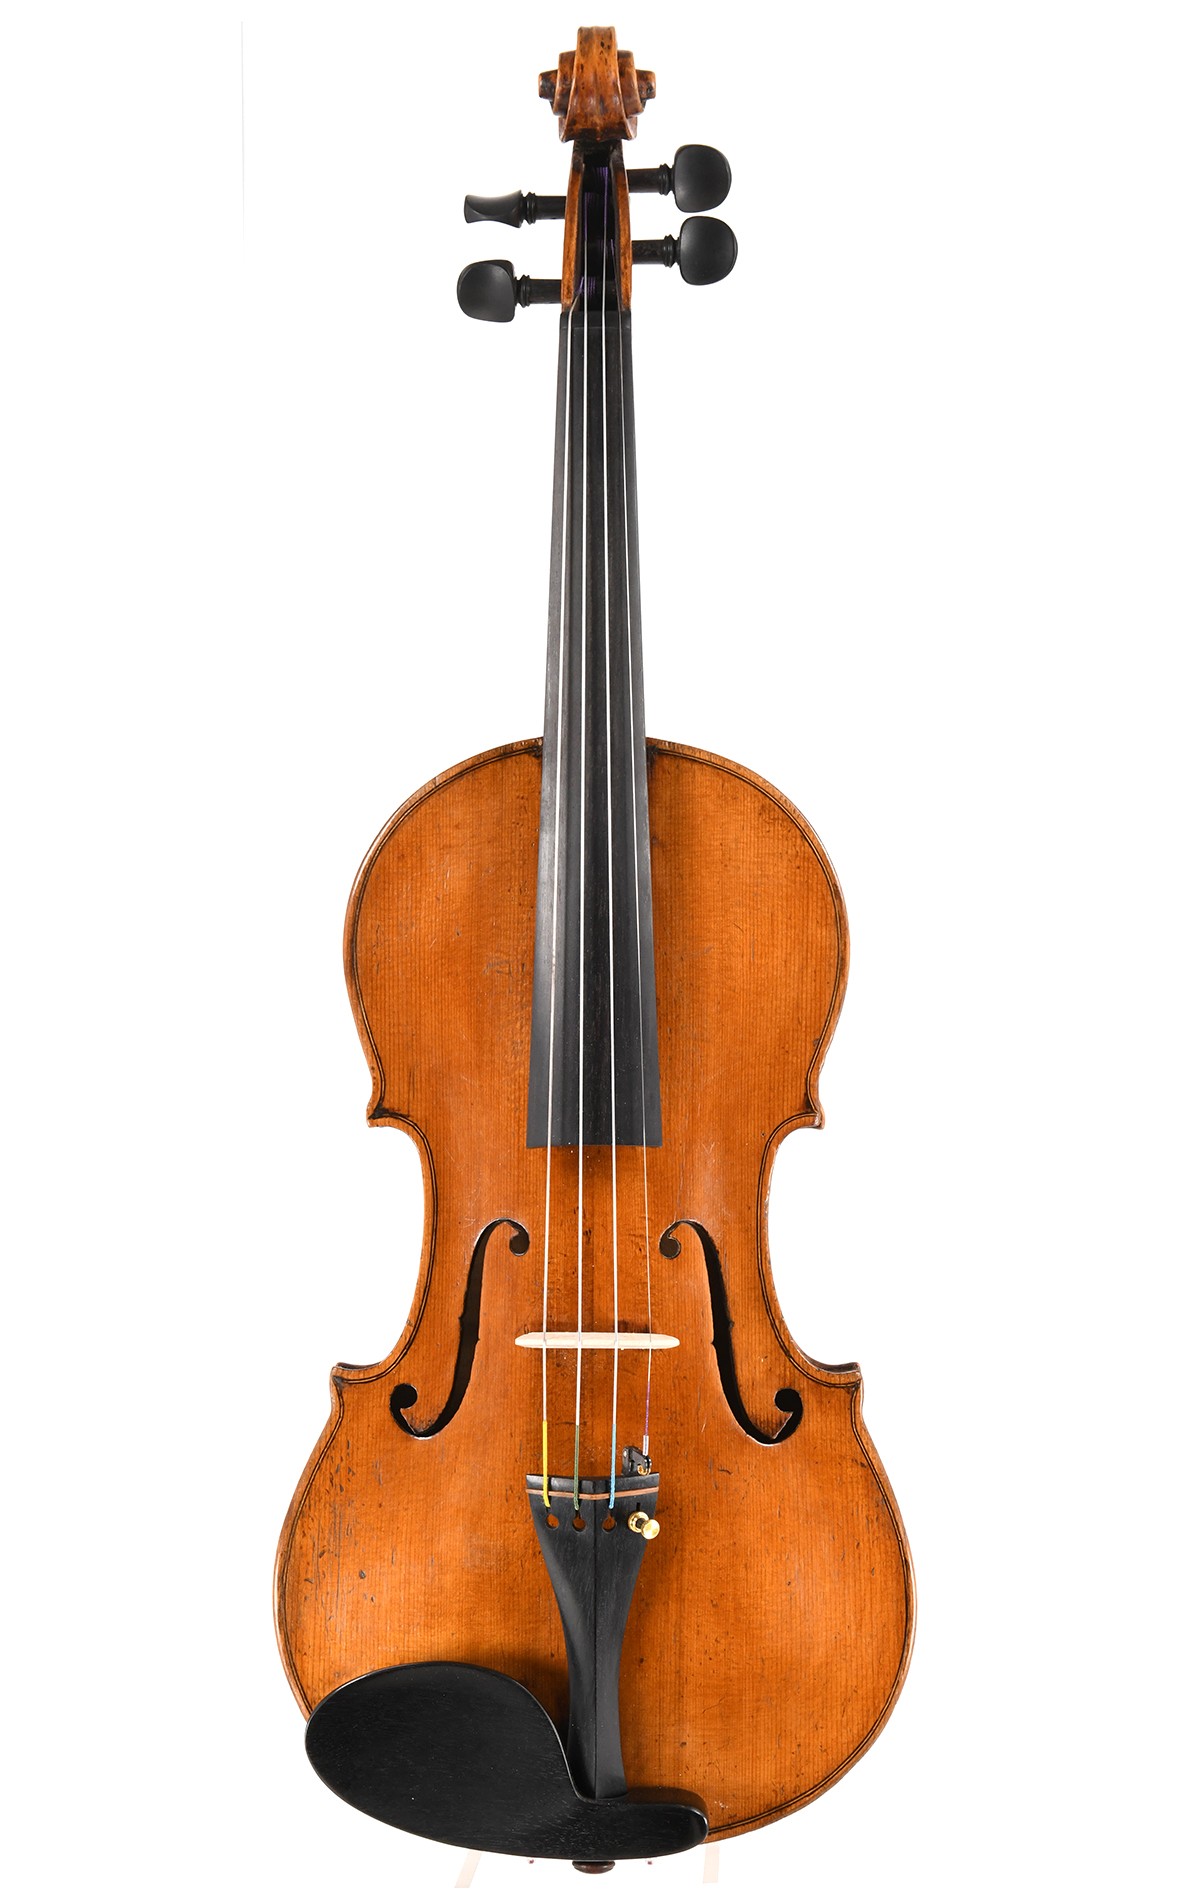 Intéressant violon de maître, environ 1800 - École suisse